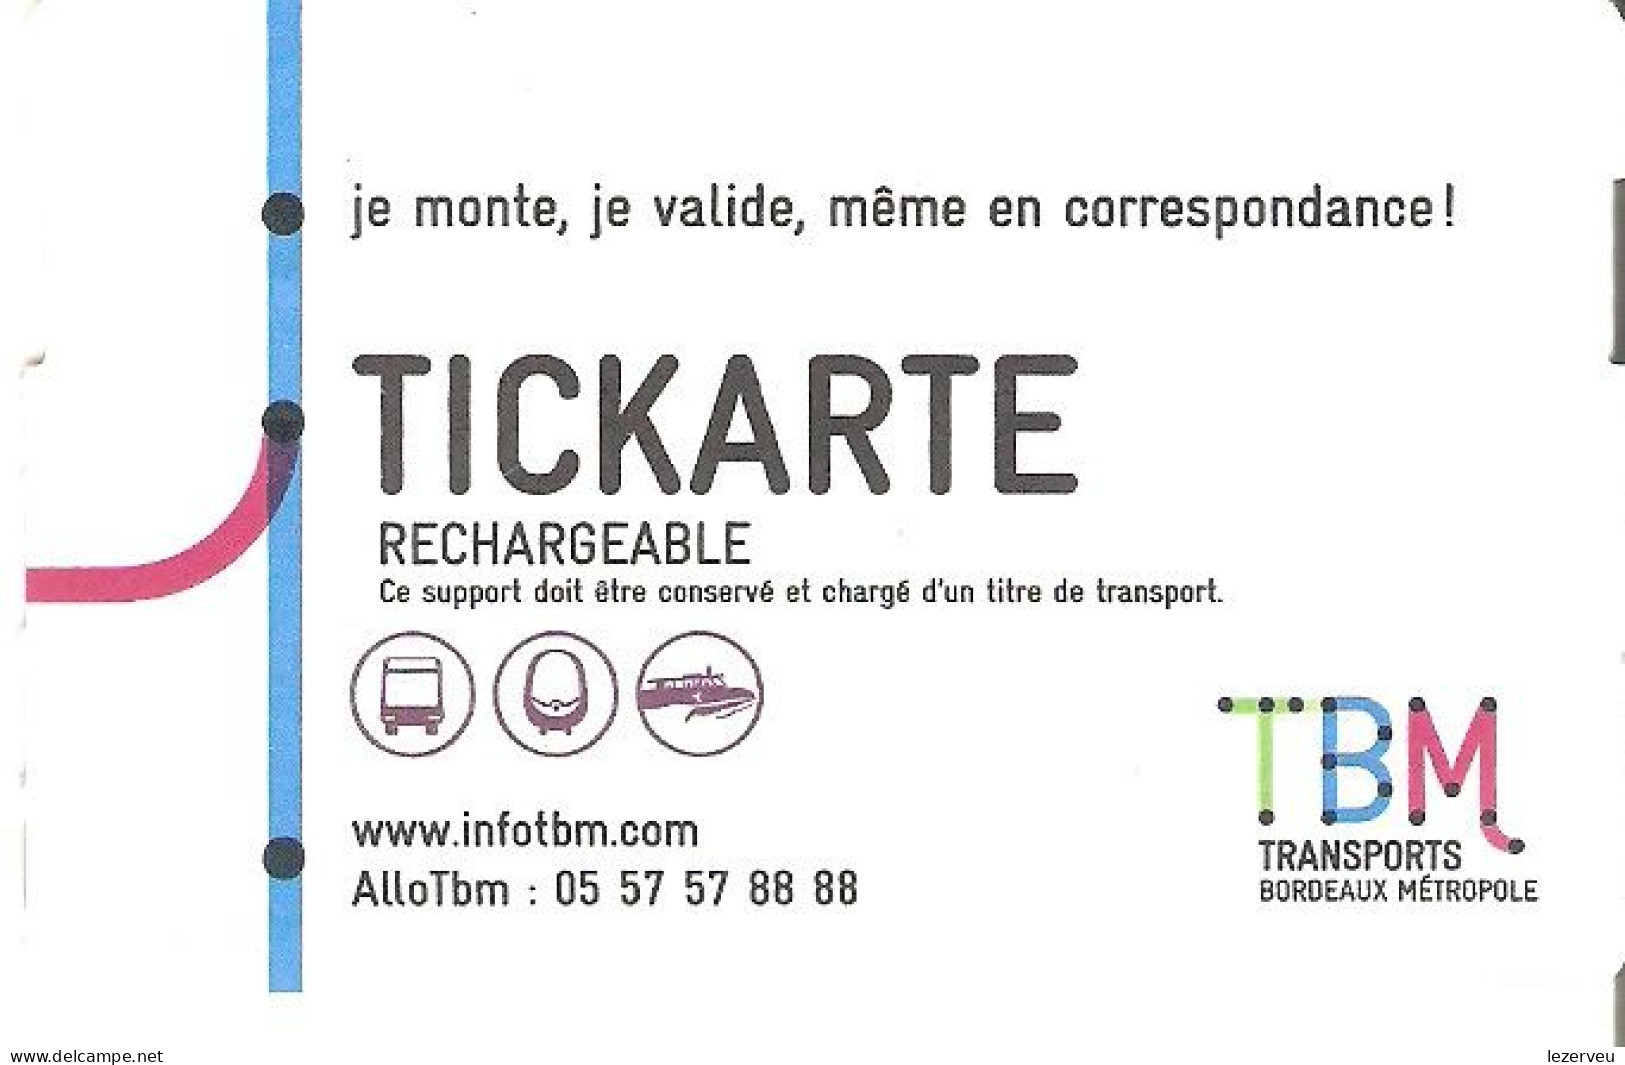 TITRE DE TRANSPORT TICKARTE TRAMWAY BORDEAUX 2 VOYAGES - Europe